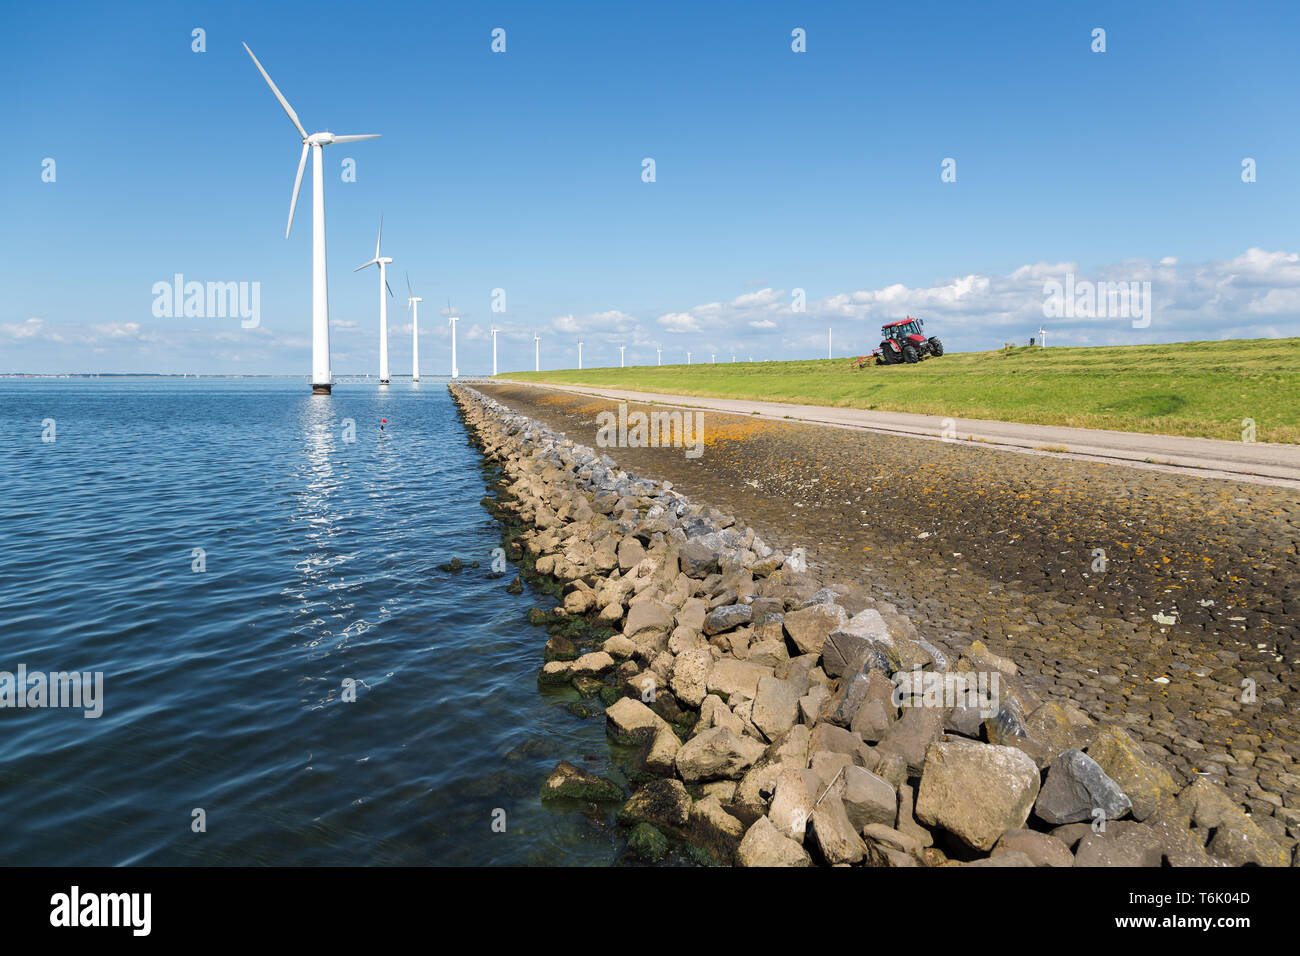 Lunga fila off shore turbine eoliche in mare olandese Foto Stock